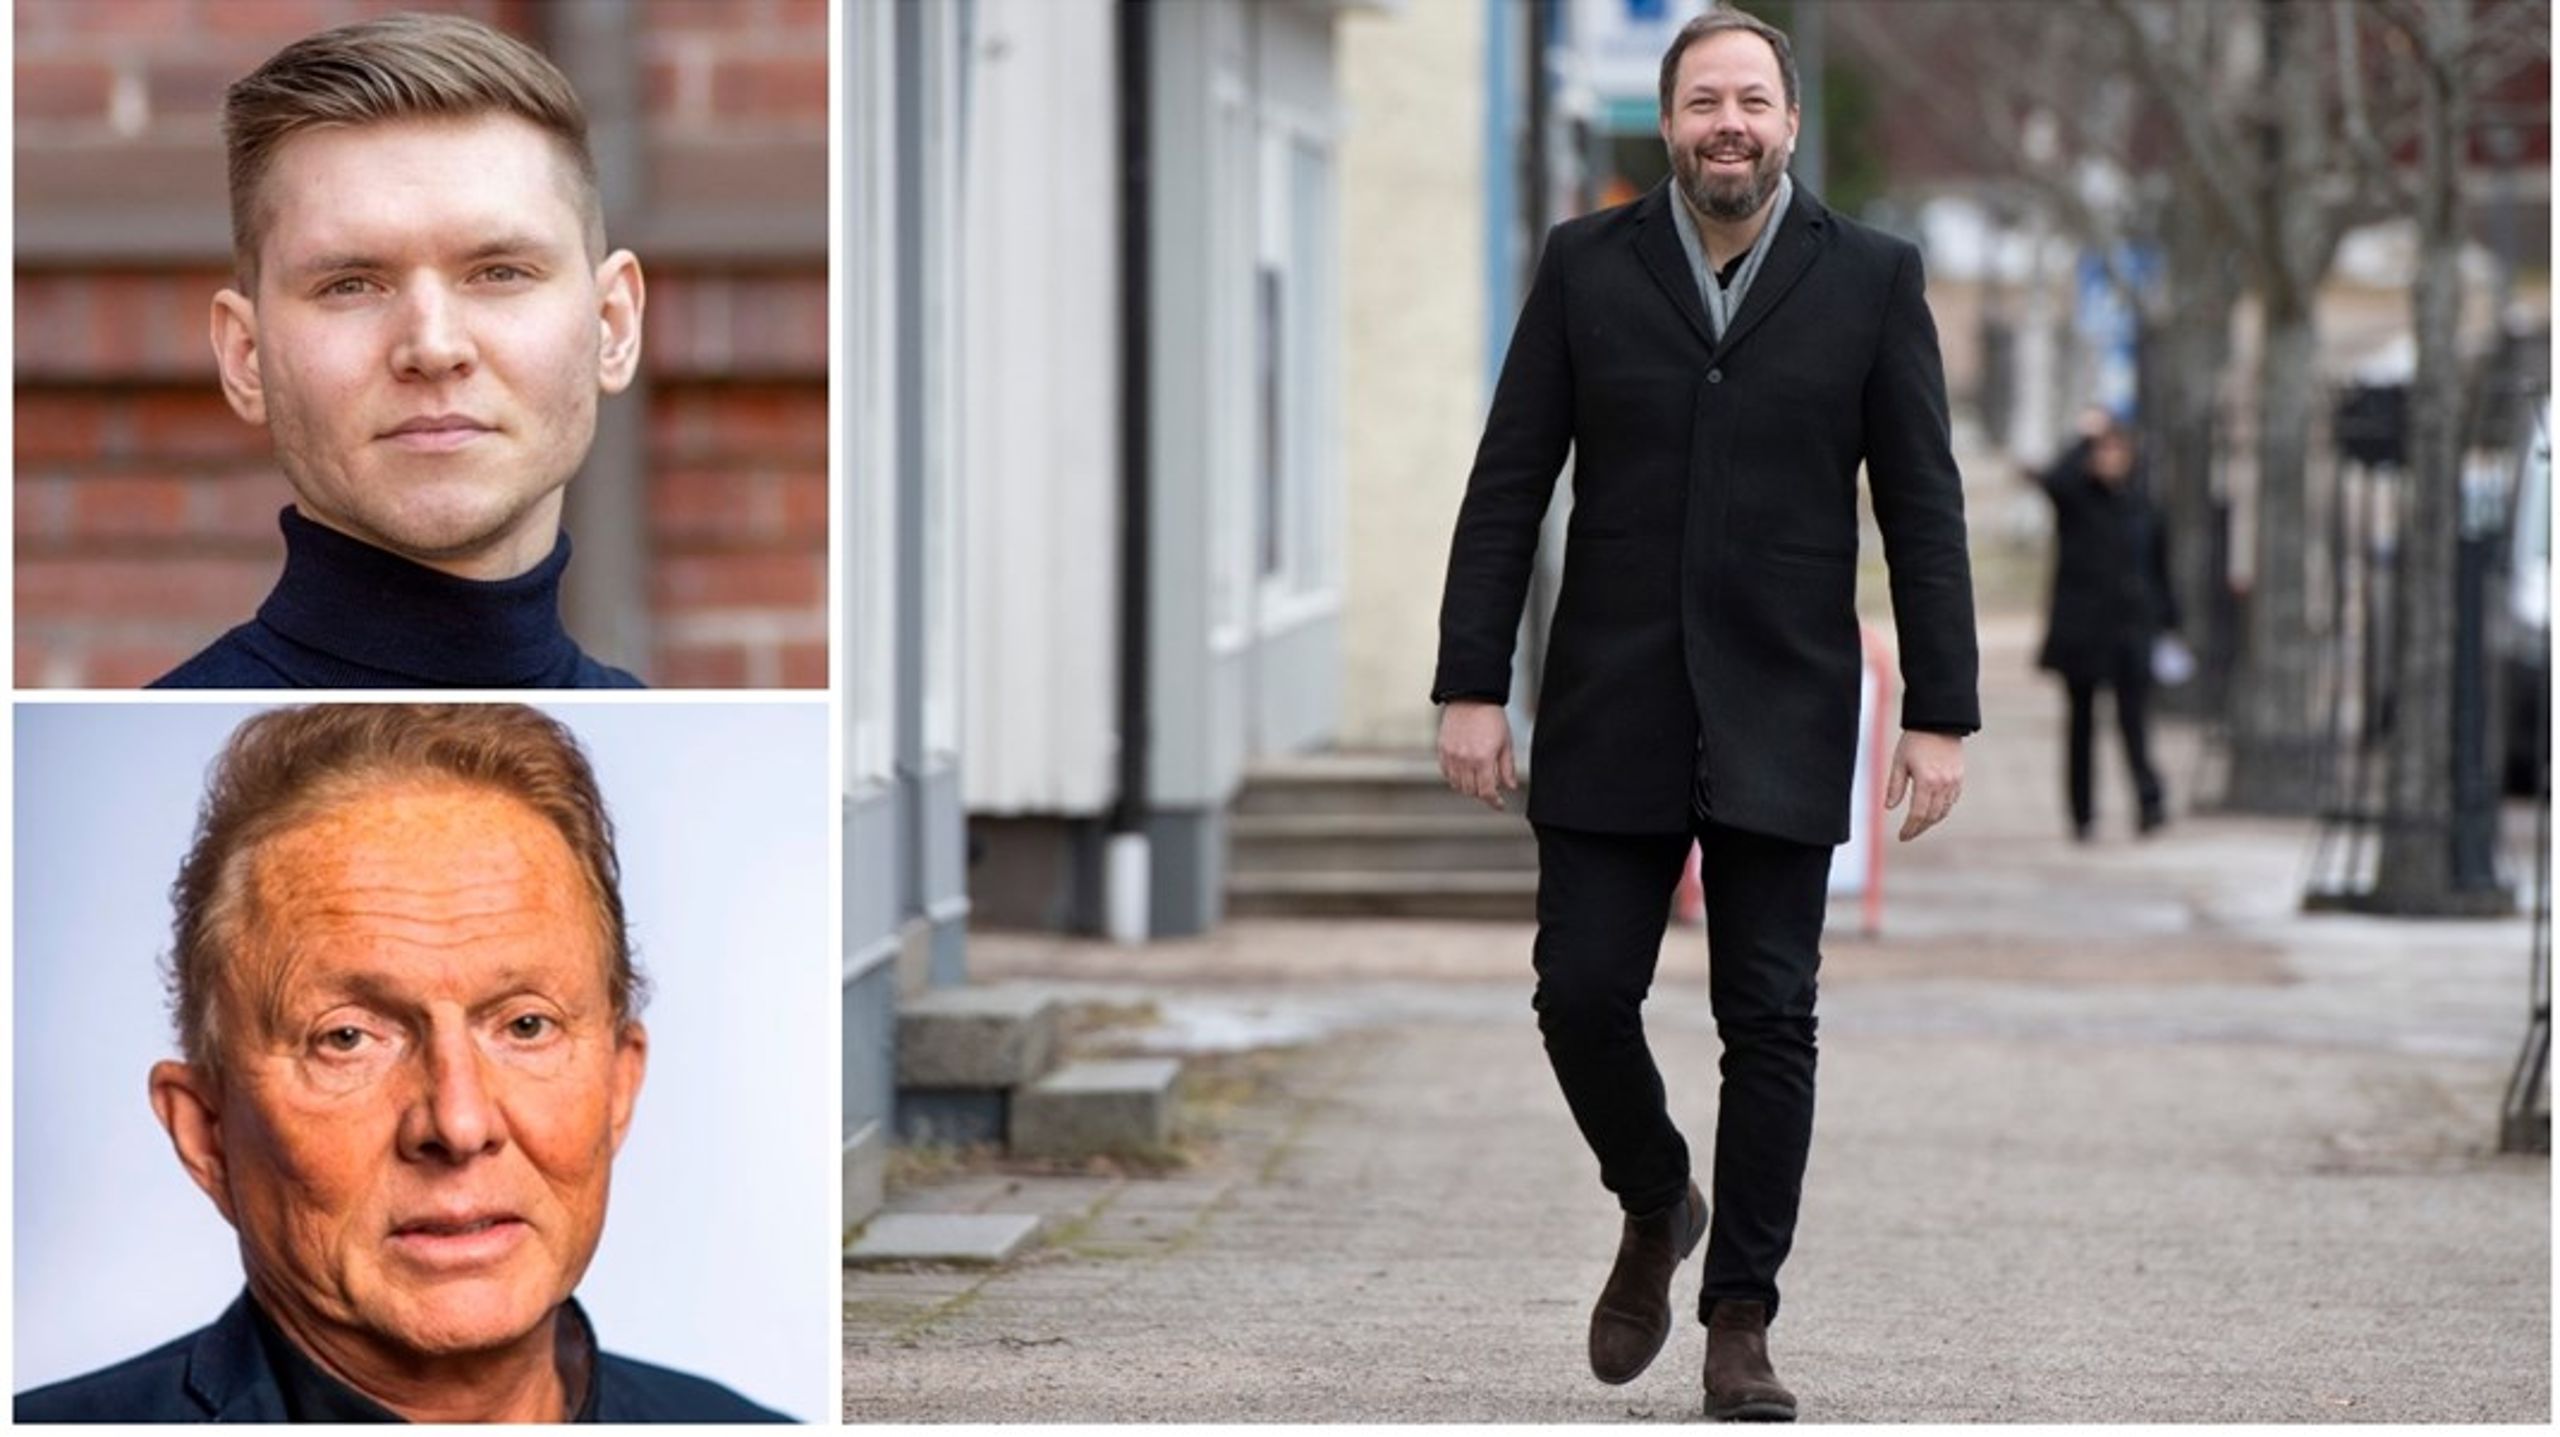 Markus Allard, Kenneth Backgård och Jens Fischer har alla lett sina partier till valframgångar. Målet är att förändra politiken lokalt och regionalt.